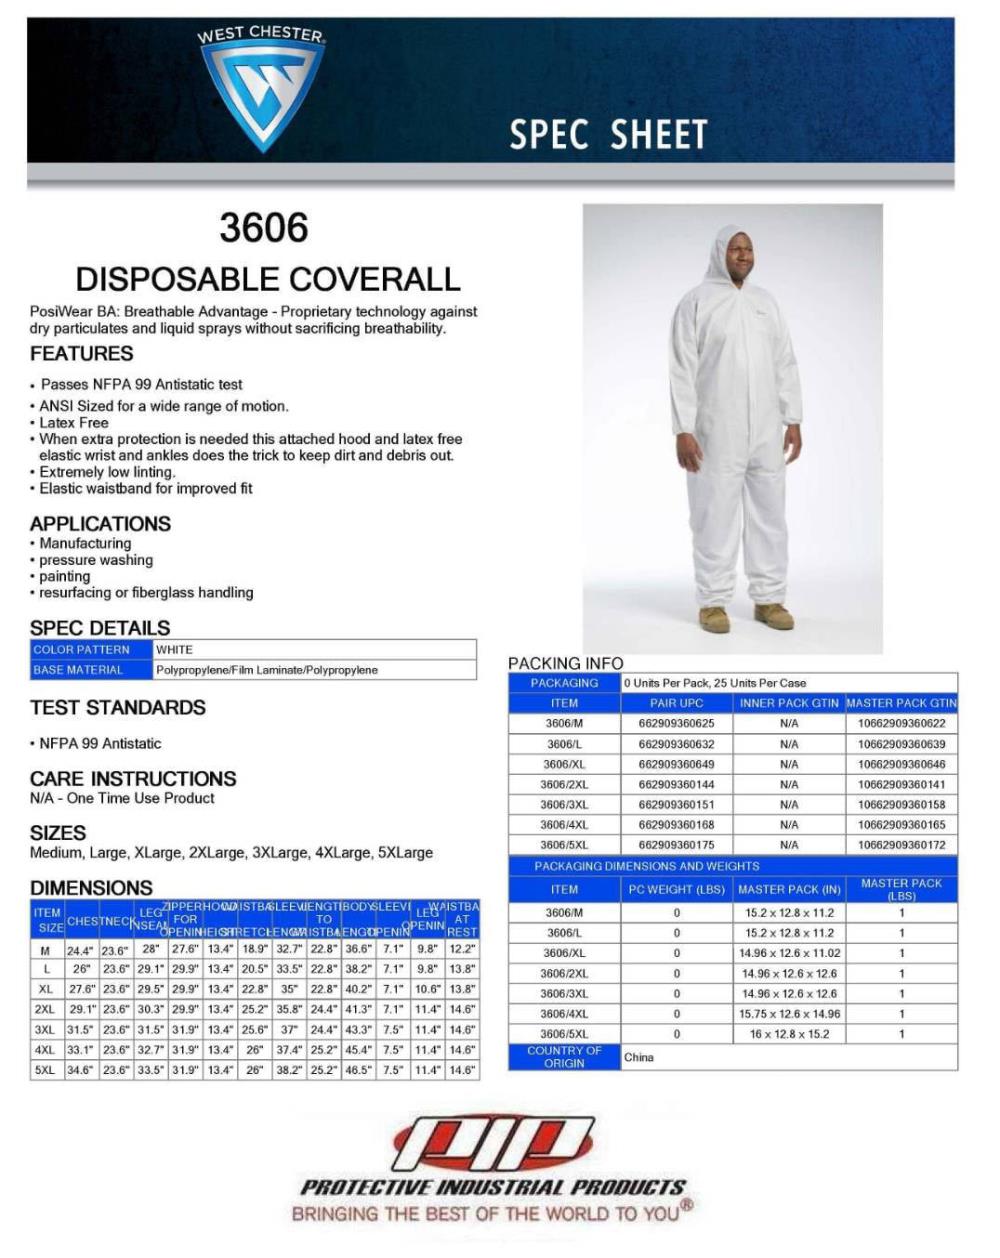 ชุด PPE (Disposable Coverall),#ชุดกันสารเคมี #ppe #ชุดppe #coverall #ชุดcoverall #ชุดป้องกันสารเคมี #ชุดกันสาร,,Plant and Facility Equipment/Safety Equipment/Protective Clothing